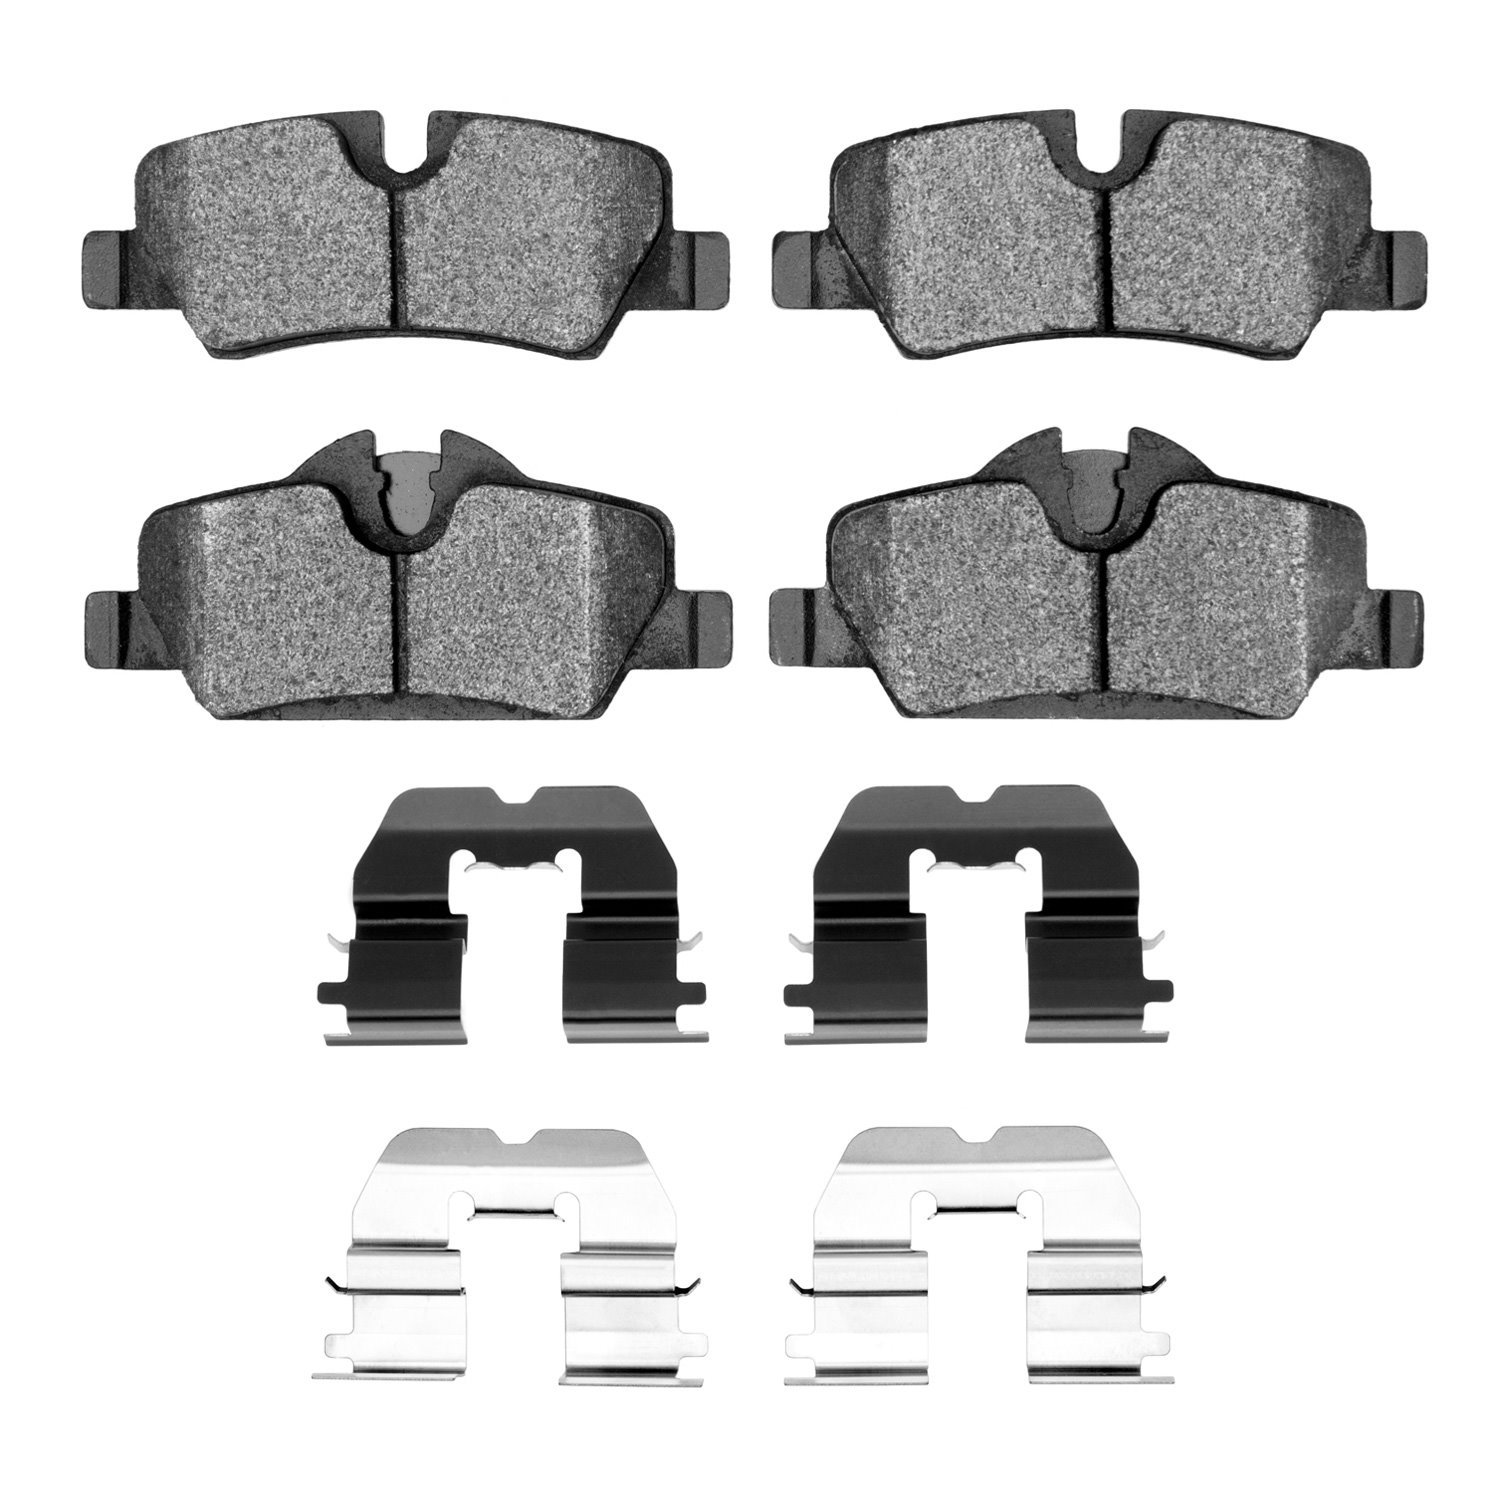 1600-1800-01 5000 Euro Ceramic Brake Pads & Hardware Kit, Fits Select Mini, Position: Rear